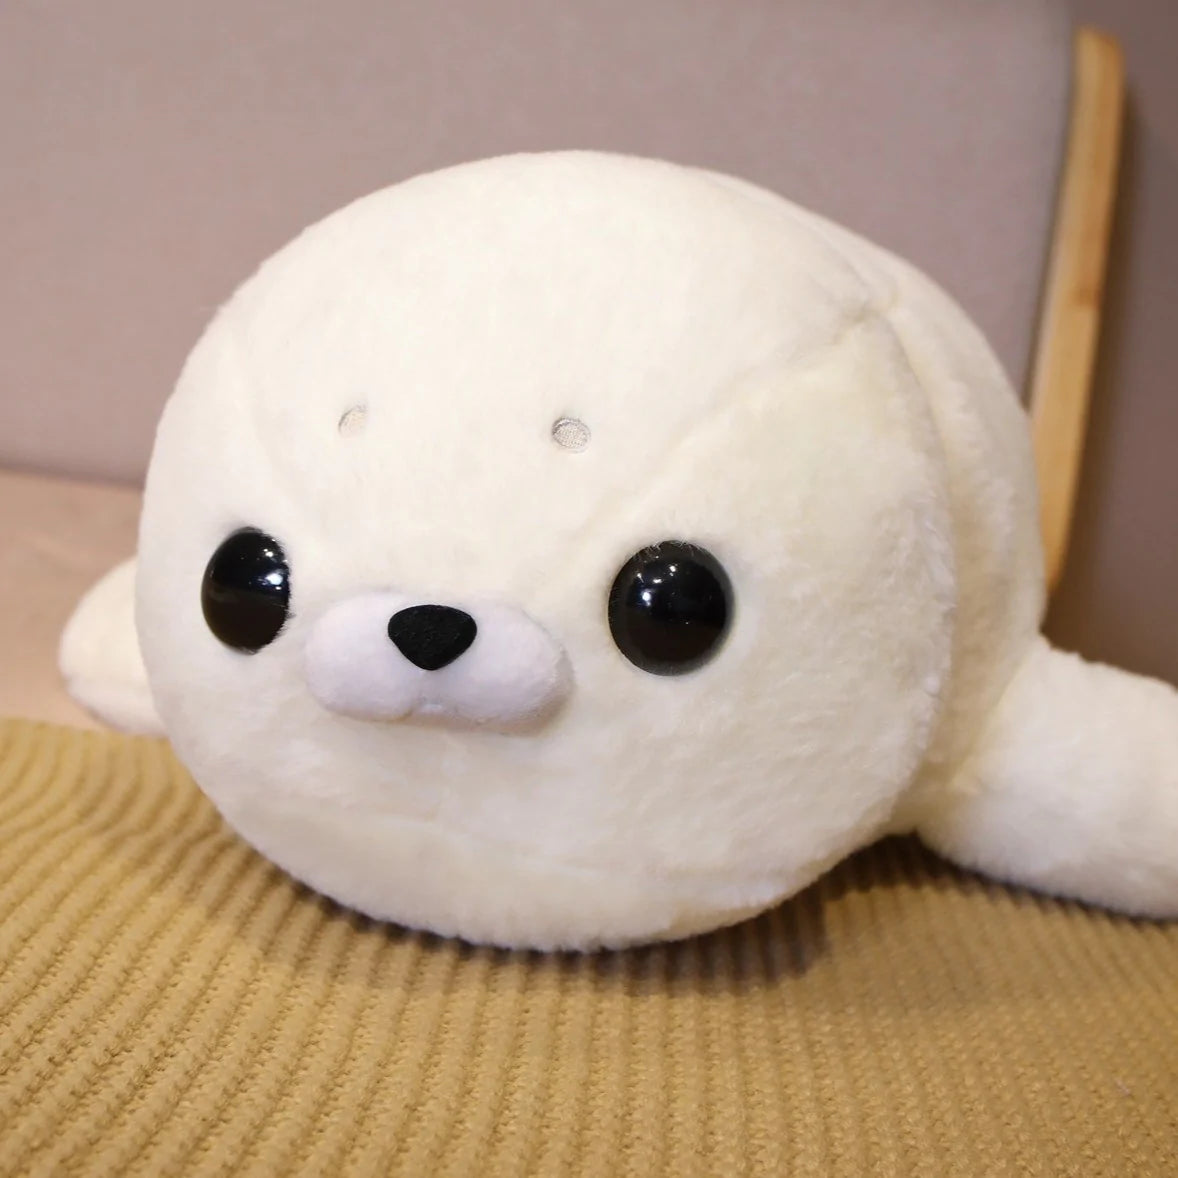 Fluffy Sleepy Kawaii Seal Stuffed Animals Plushies